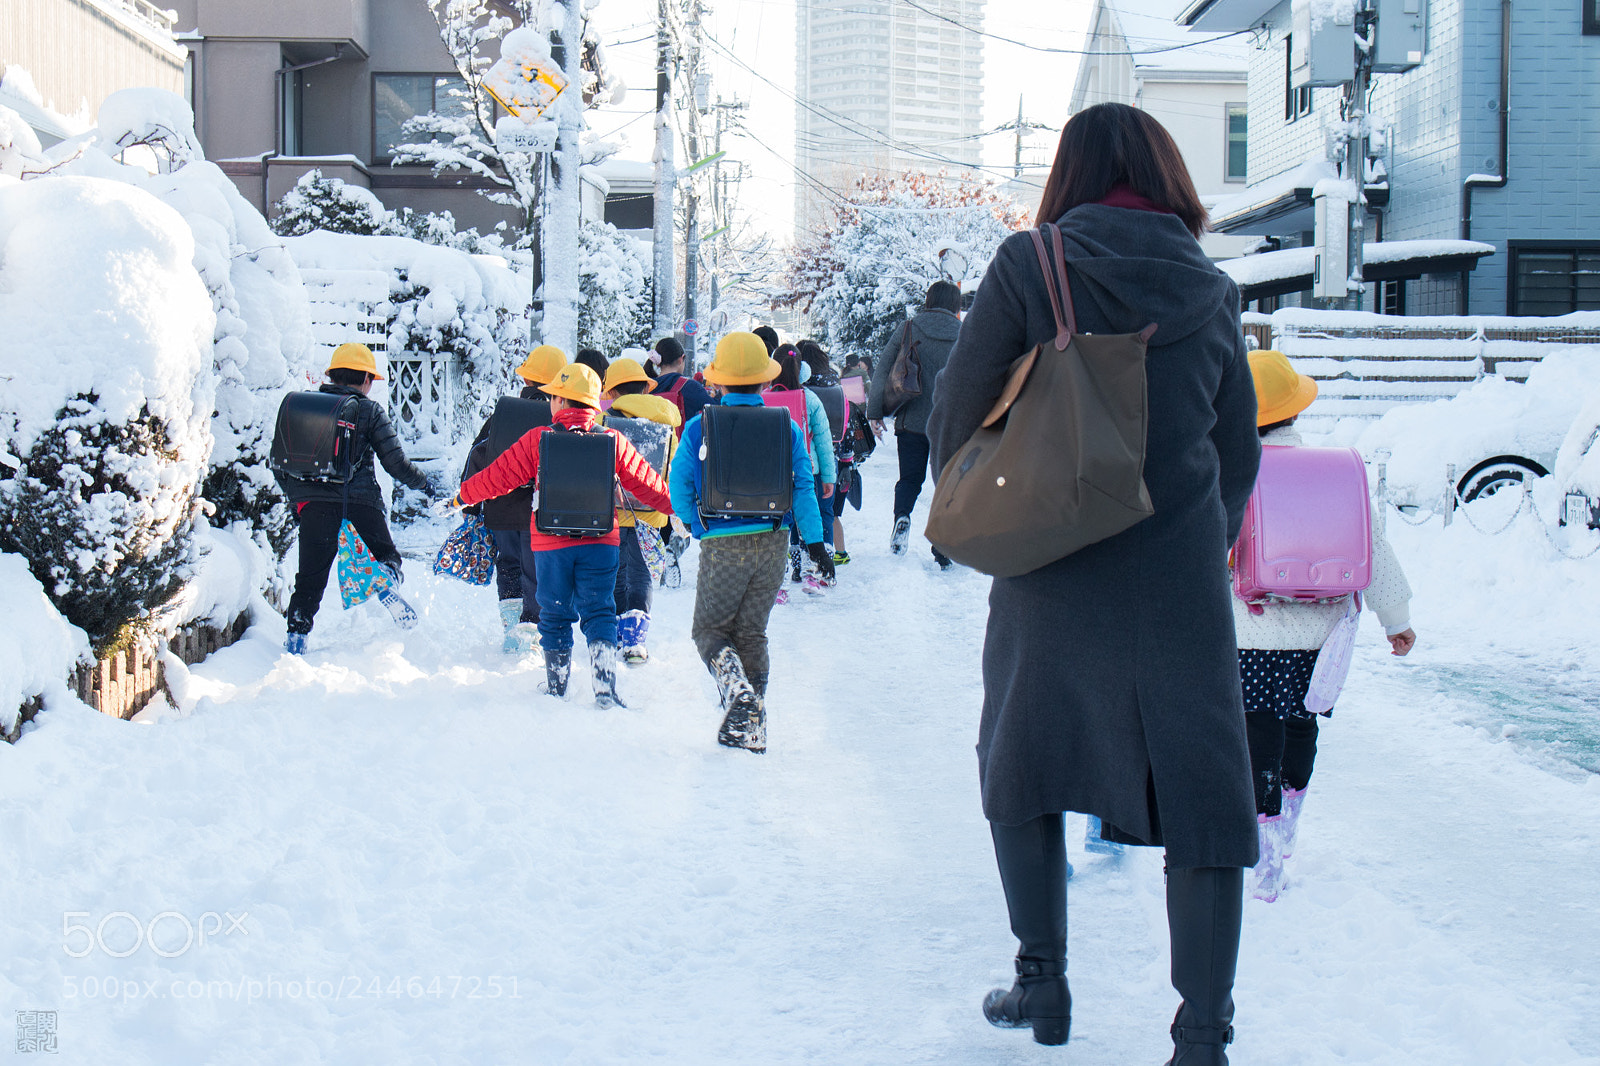 Canon EOS 70D sample photo. Tokyo winter morning photography